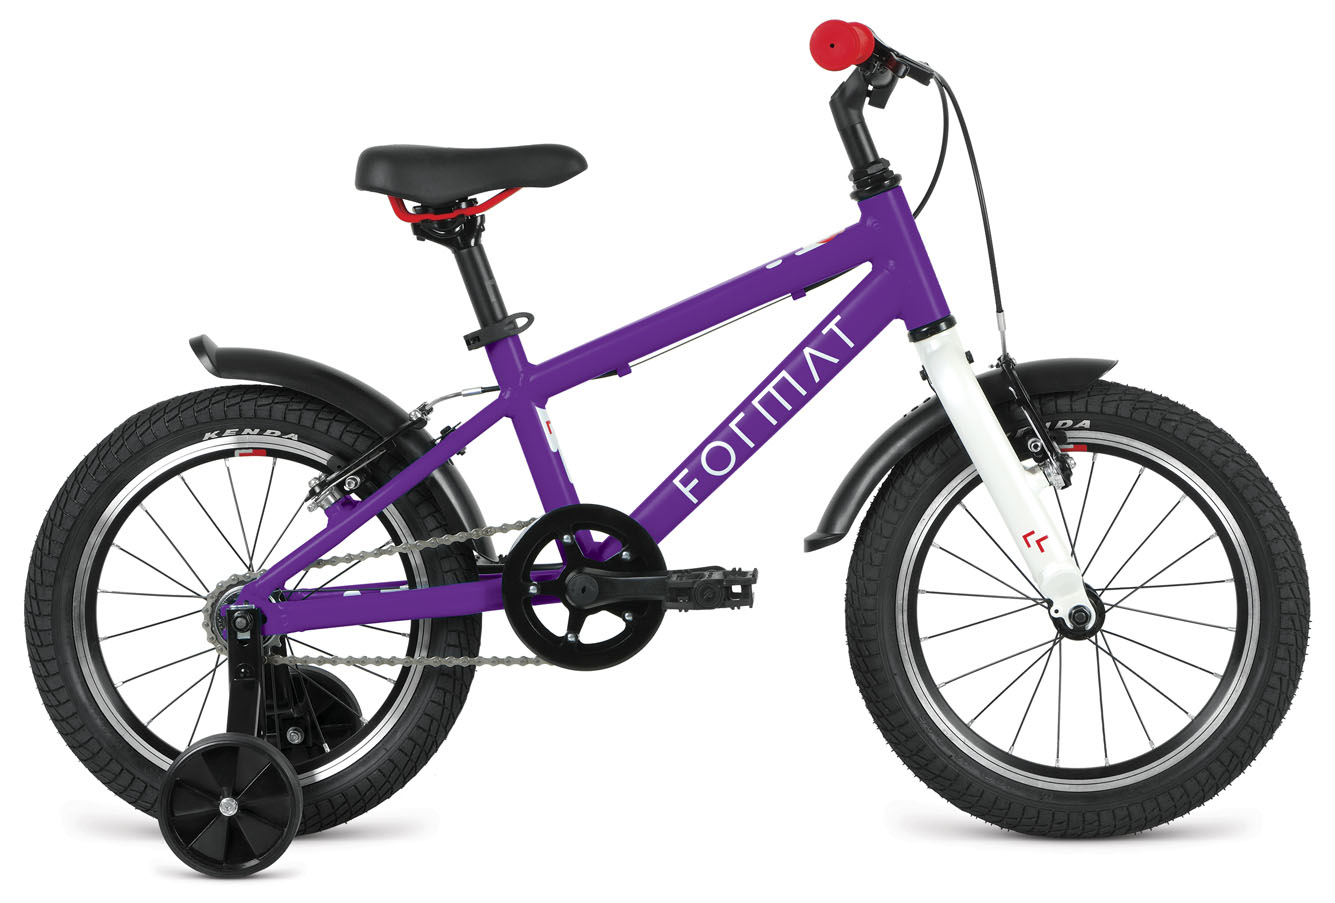  Отзывы о Детском велосипеде Format Kids 16 2022